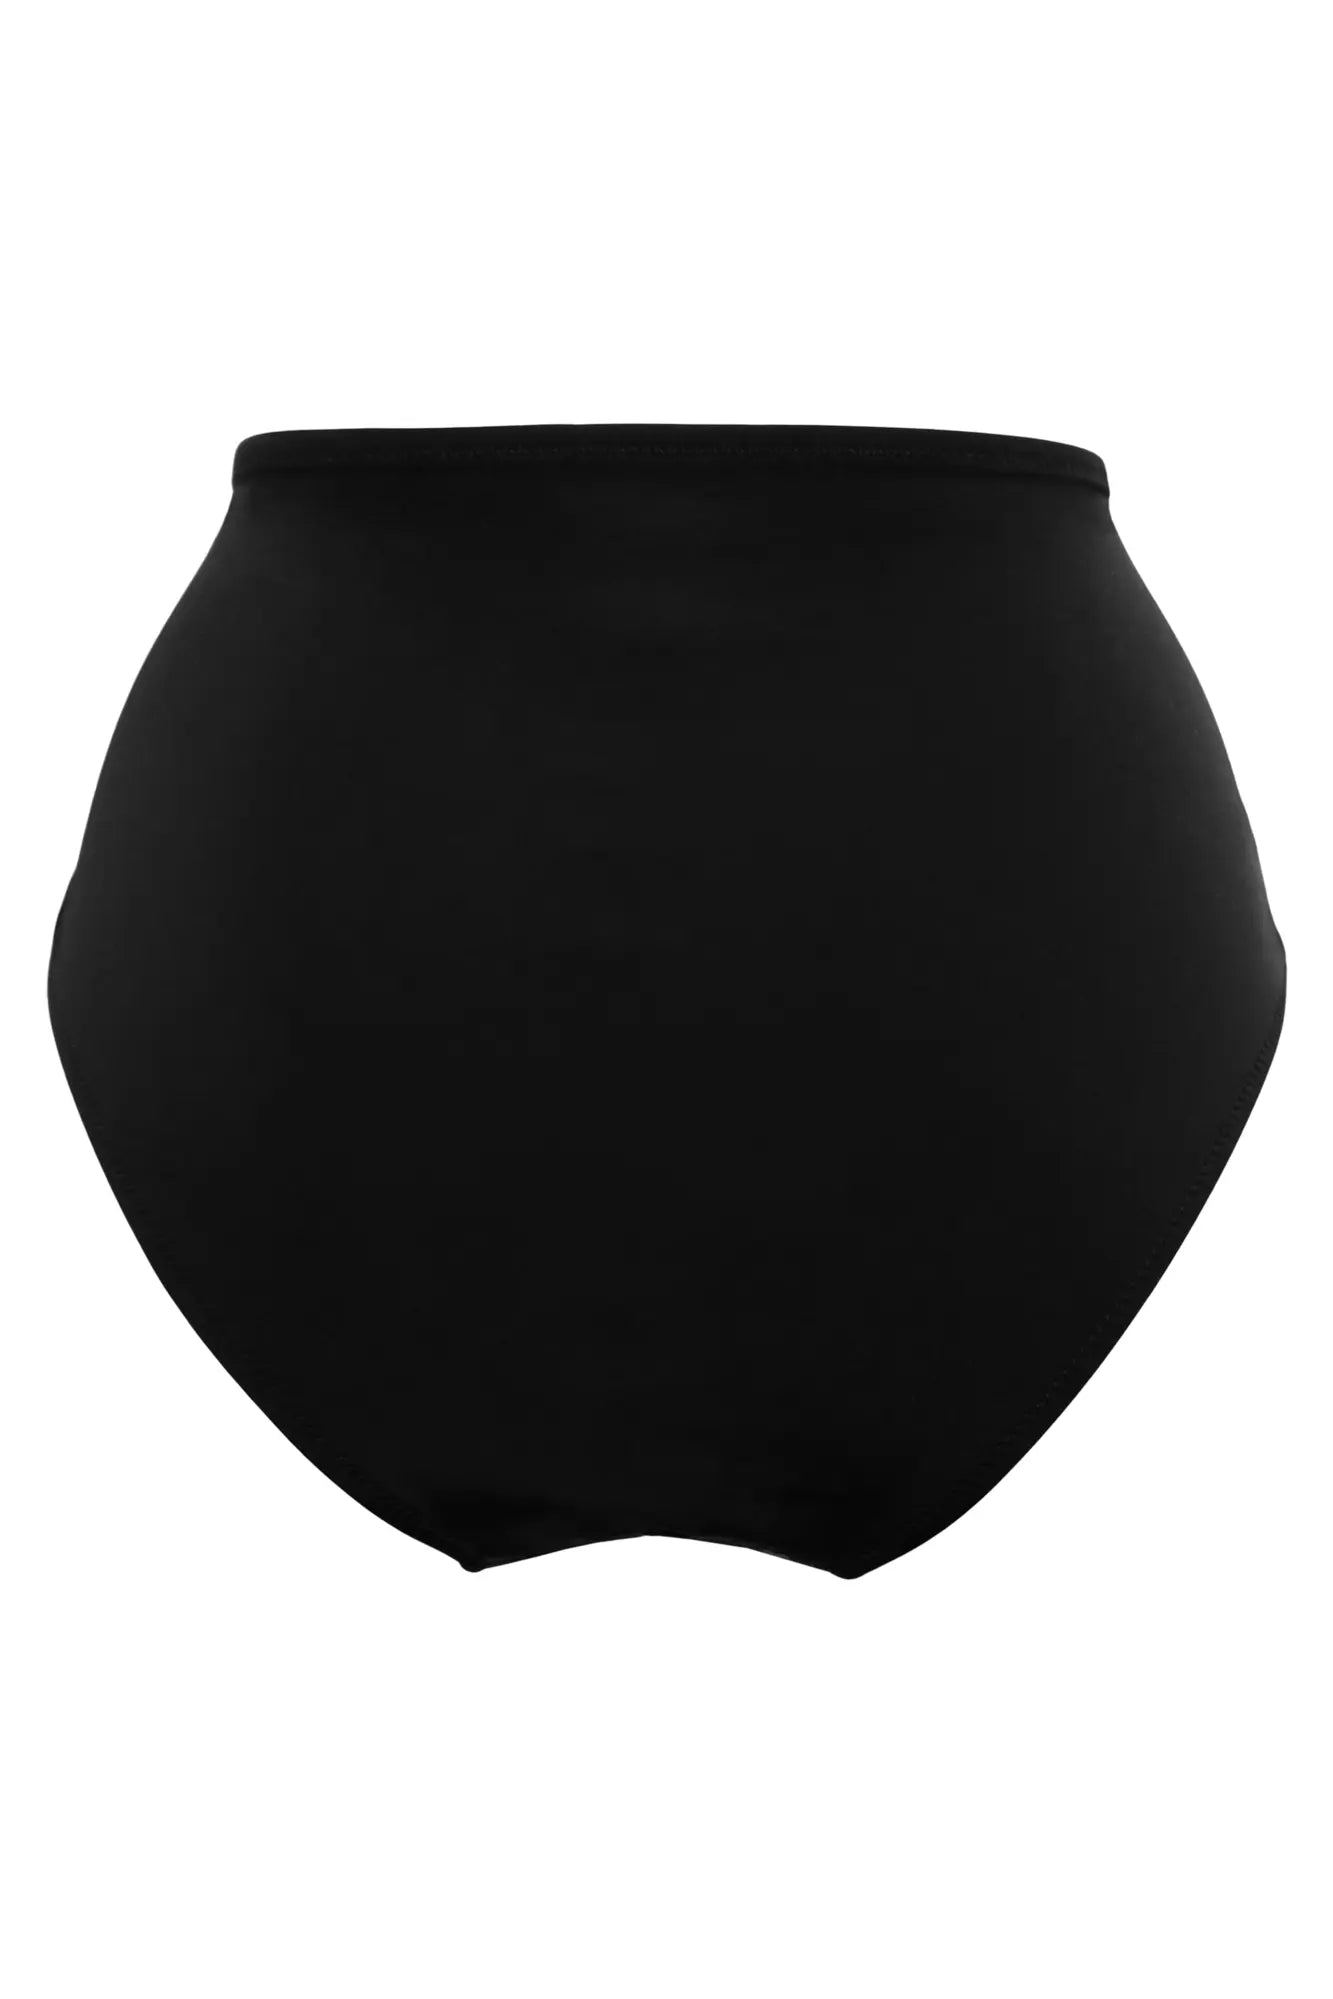 Santa Cruz - Bas de bikini taille très haute - Noir - Pour Moi